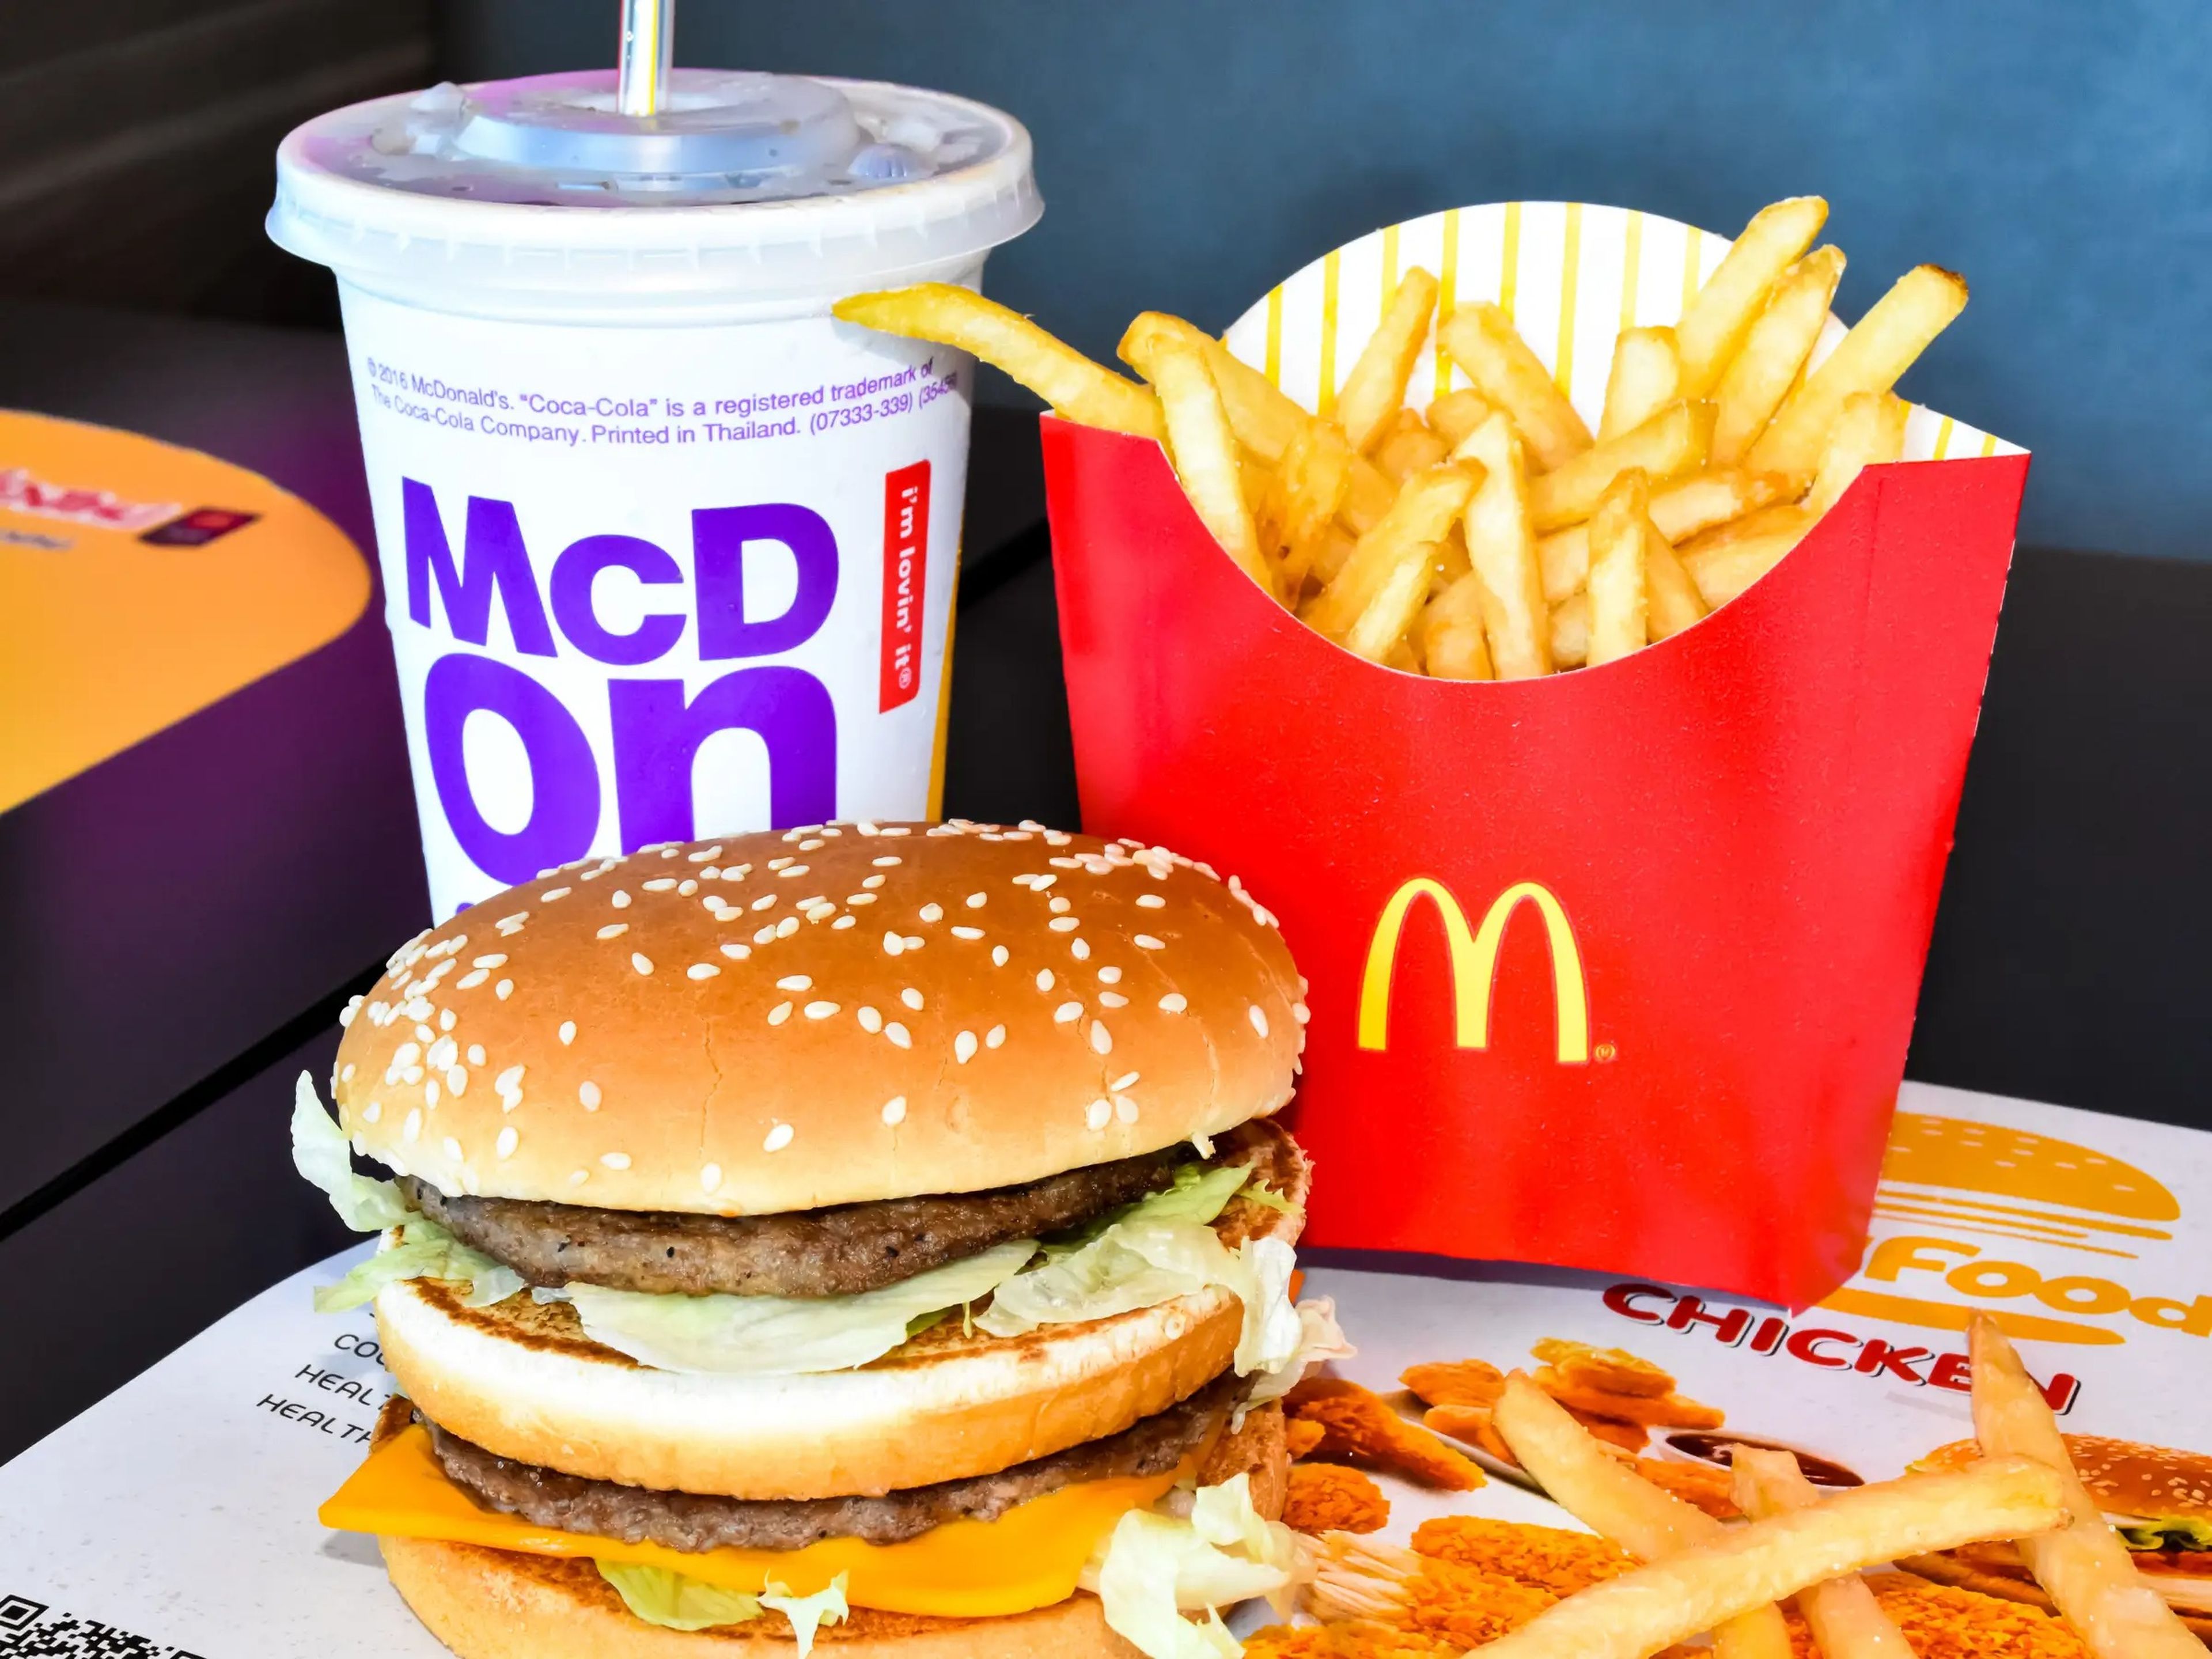 Las hamburguesas McDonald's son ultrafamosas, pero quizá no conozcas estos datos interesantes sobre ellas.